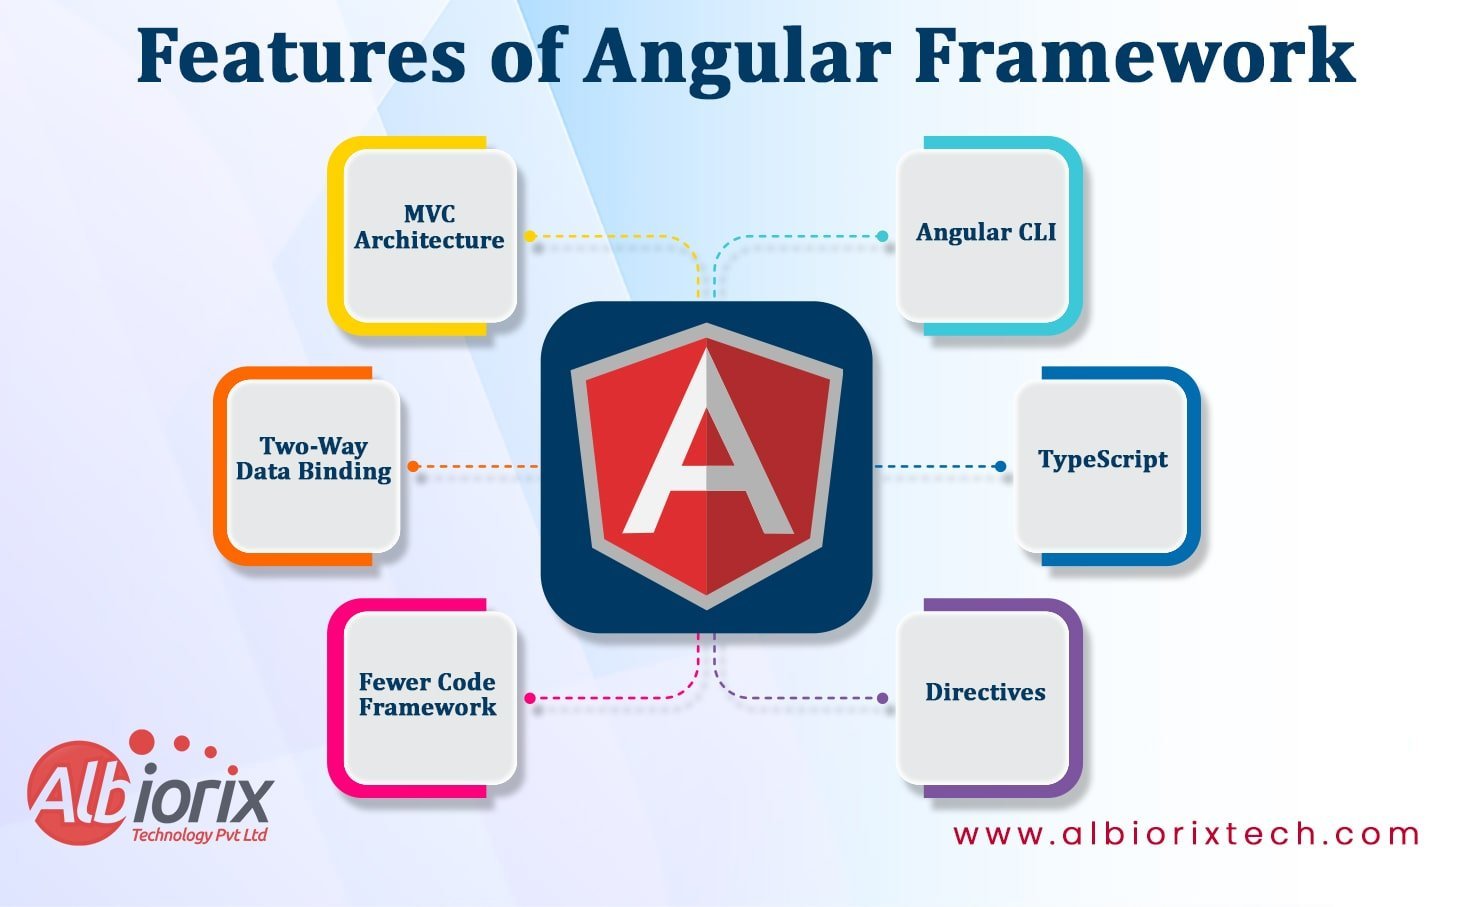 Top Features of Angular Framework